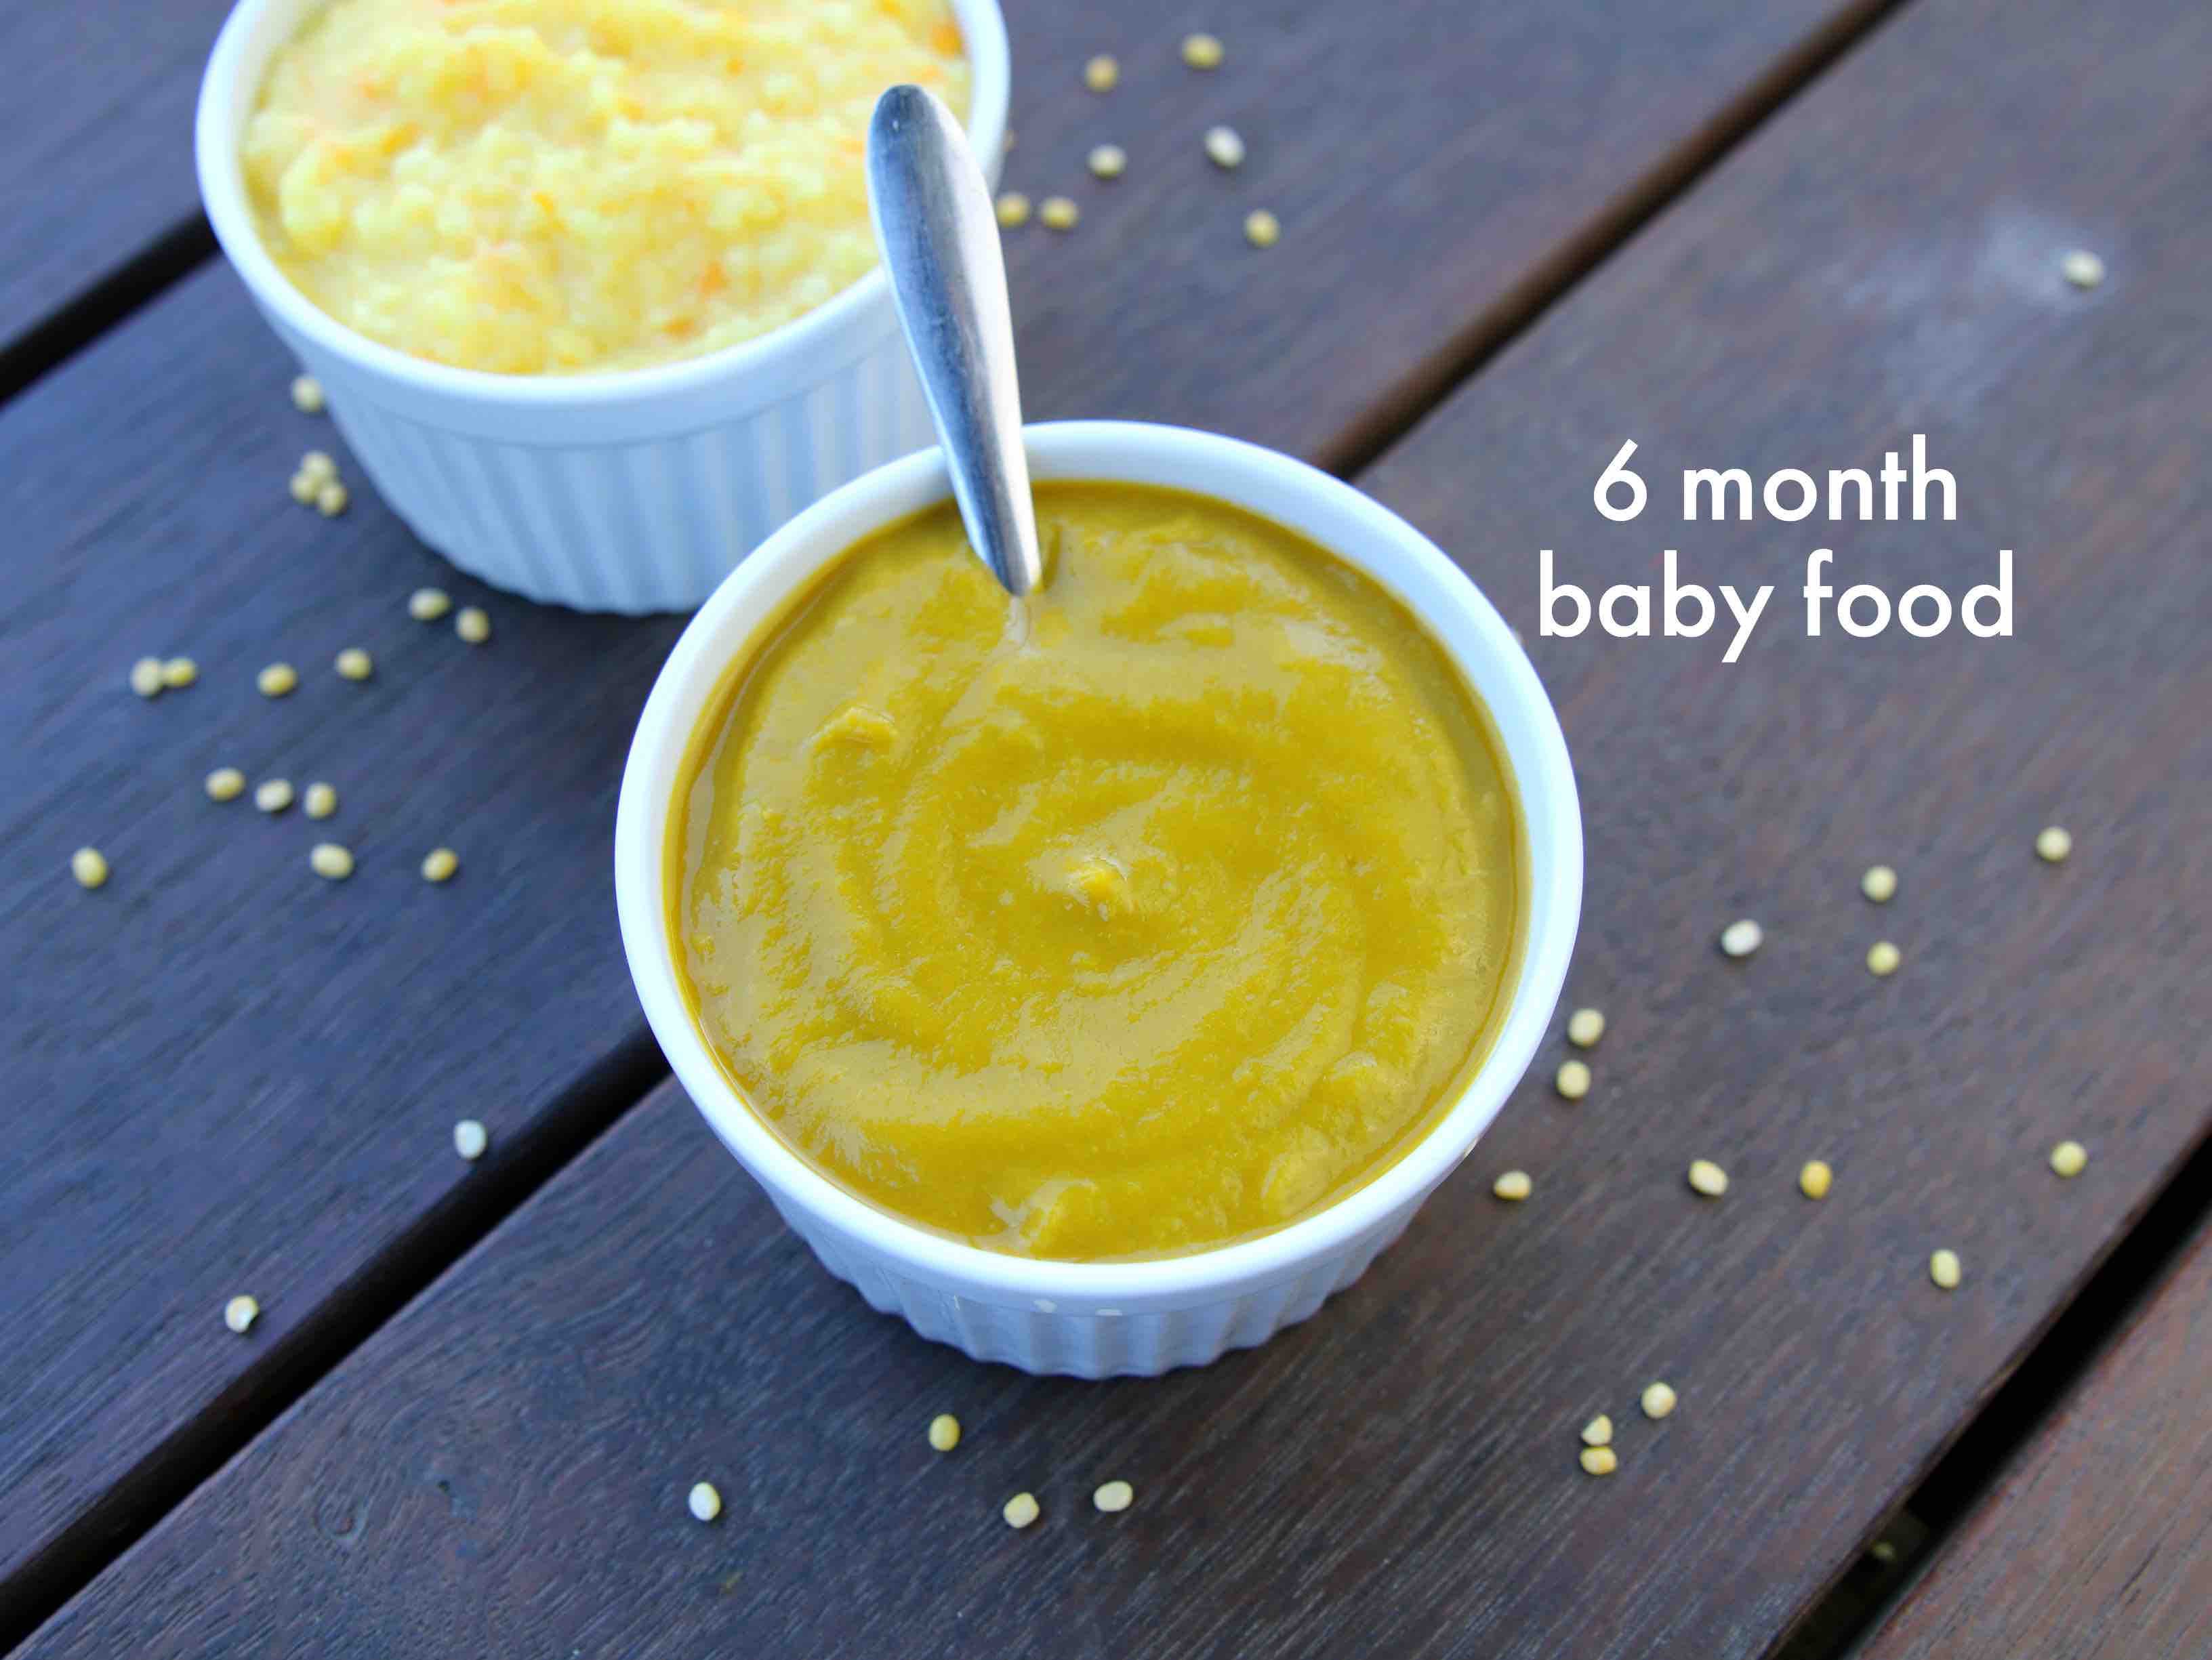 6 month baby food | six month baby food | baby food ...